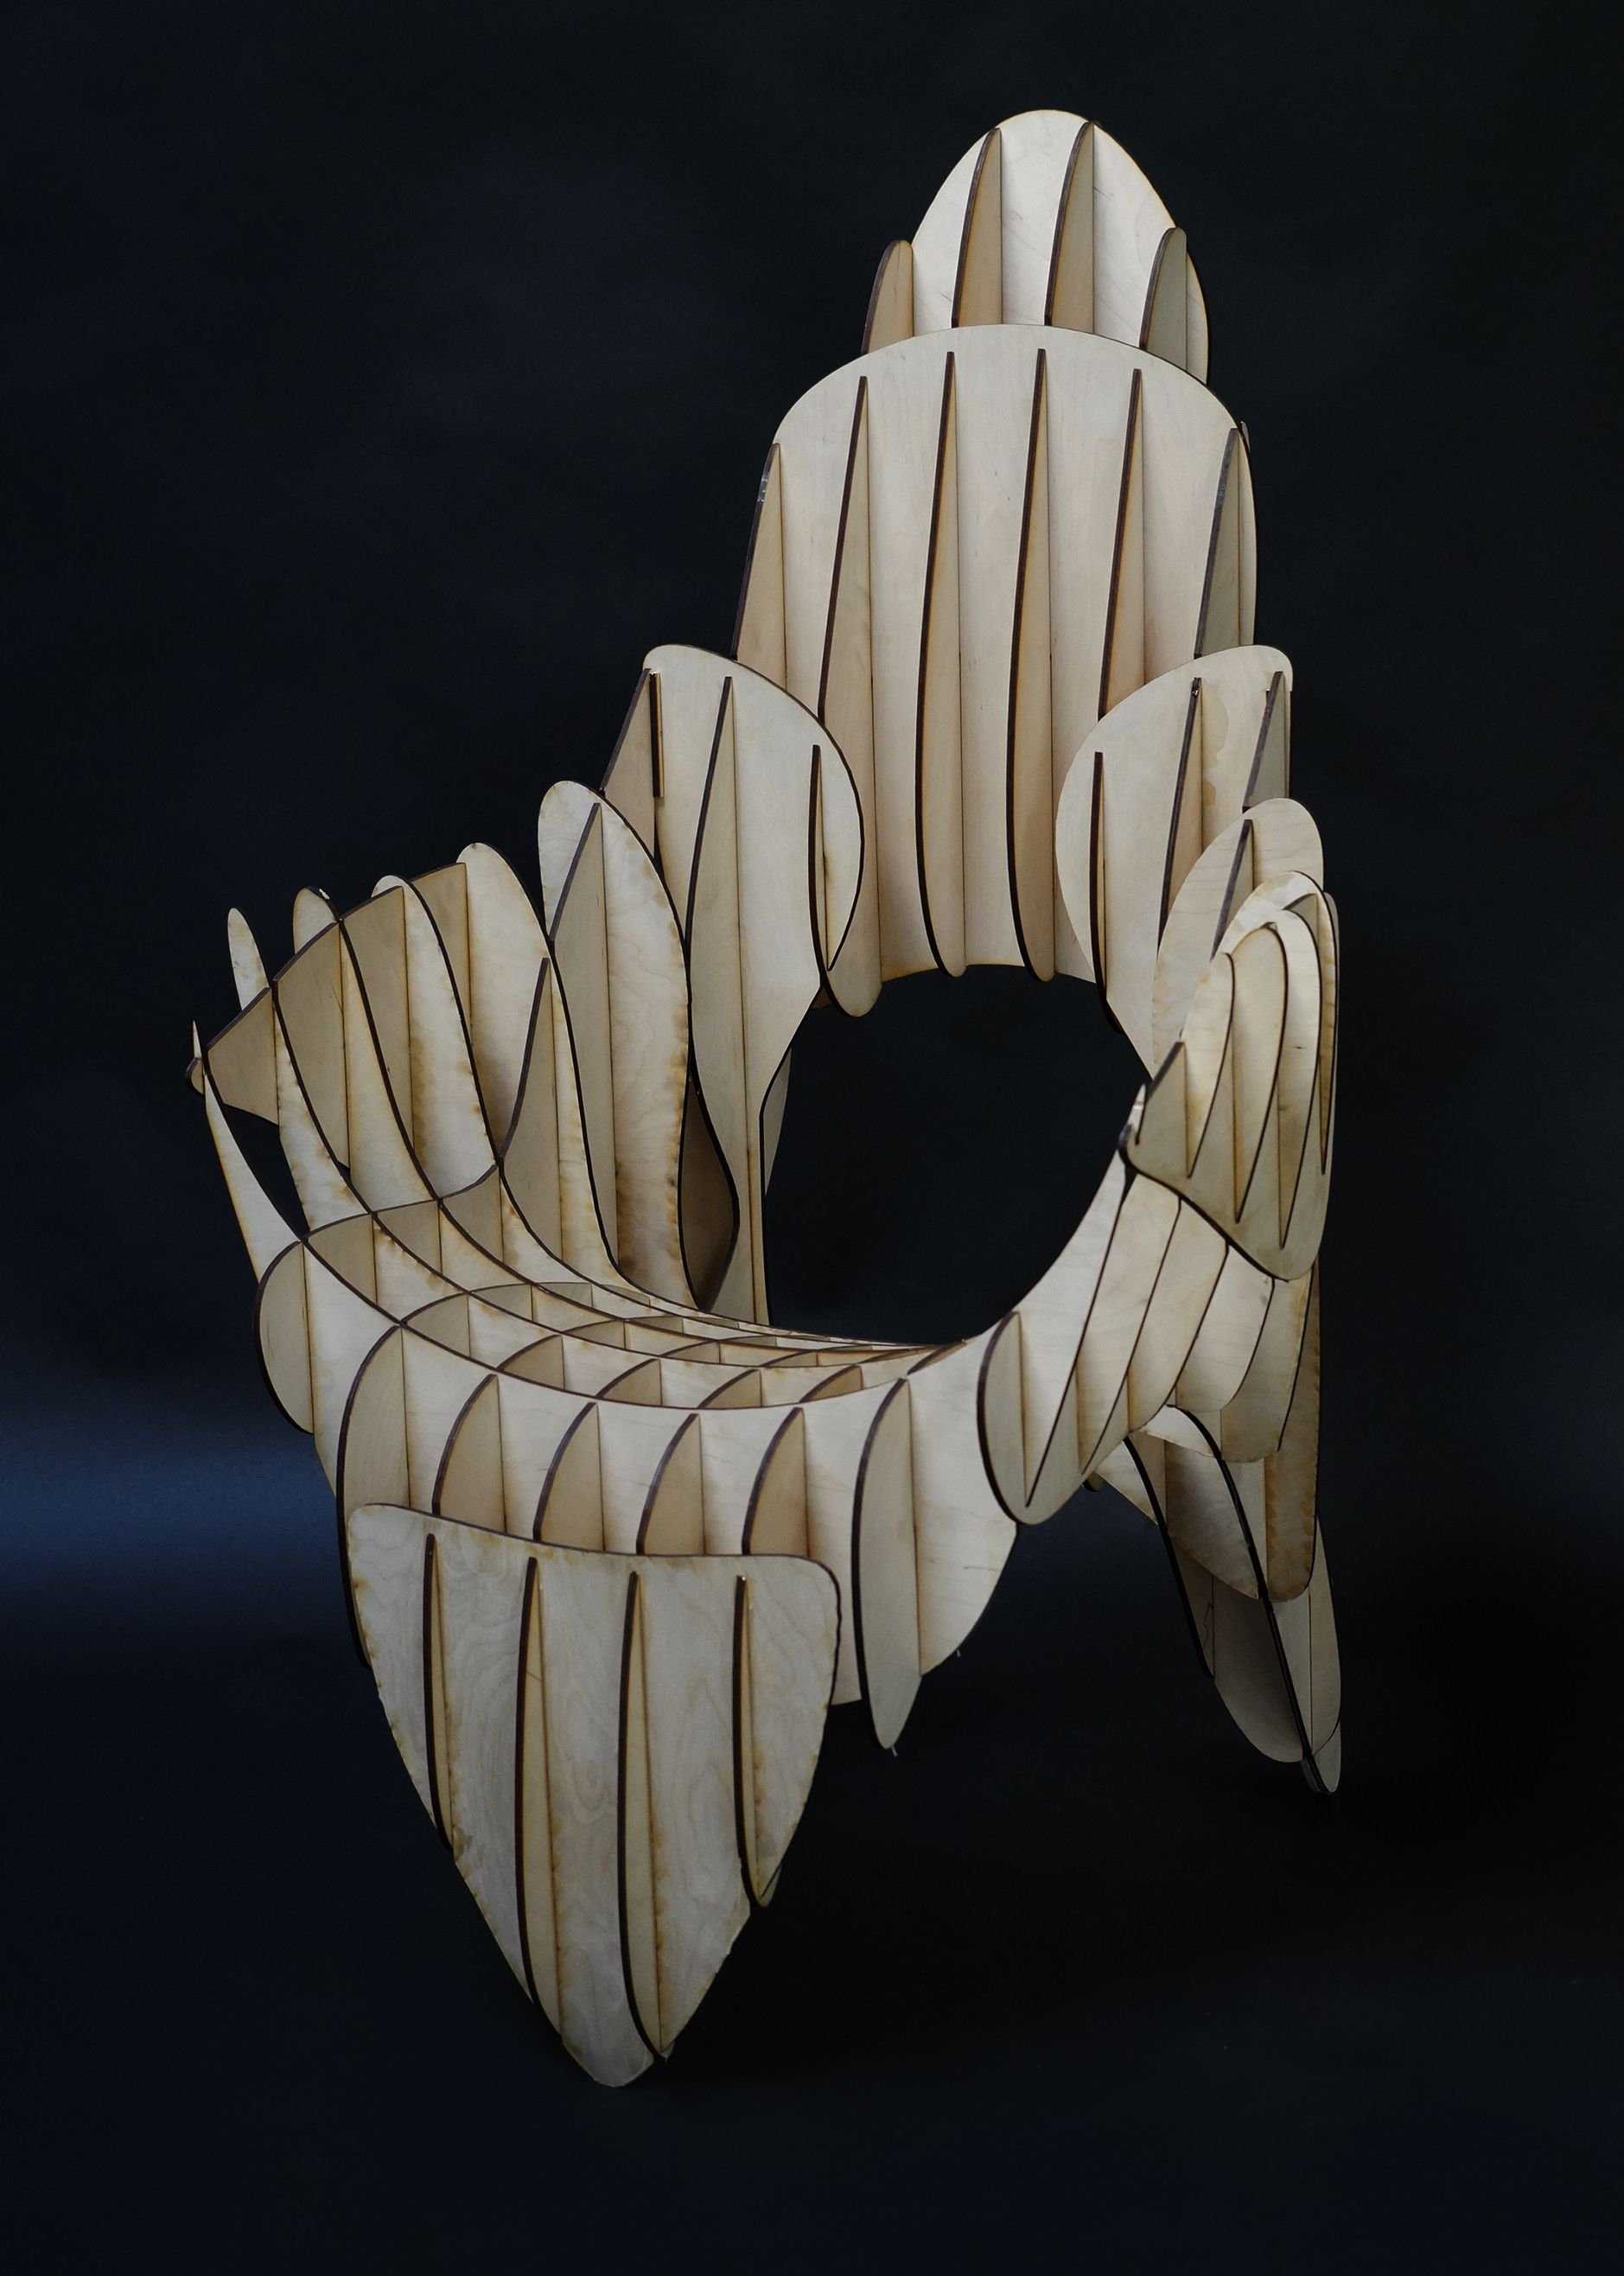 Spartan Side Chair, 29" x 30" x 29", Laser cut plywood